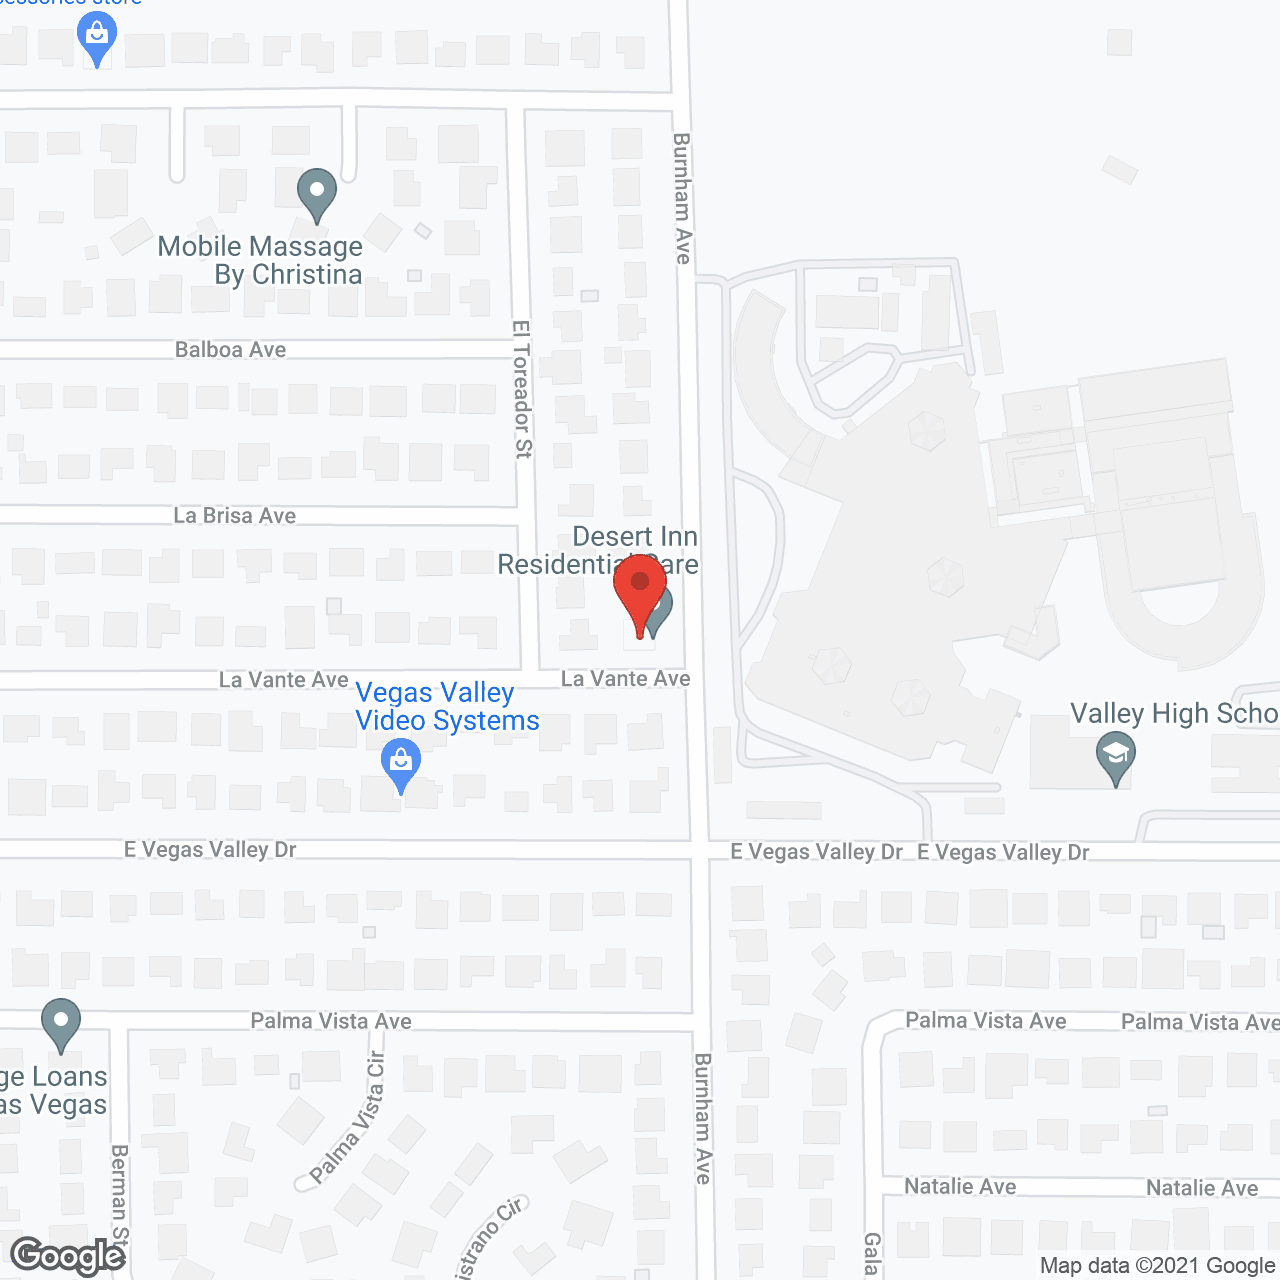 Desert Inn Residential Care in google map